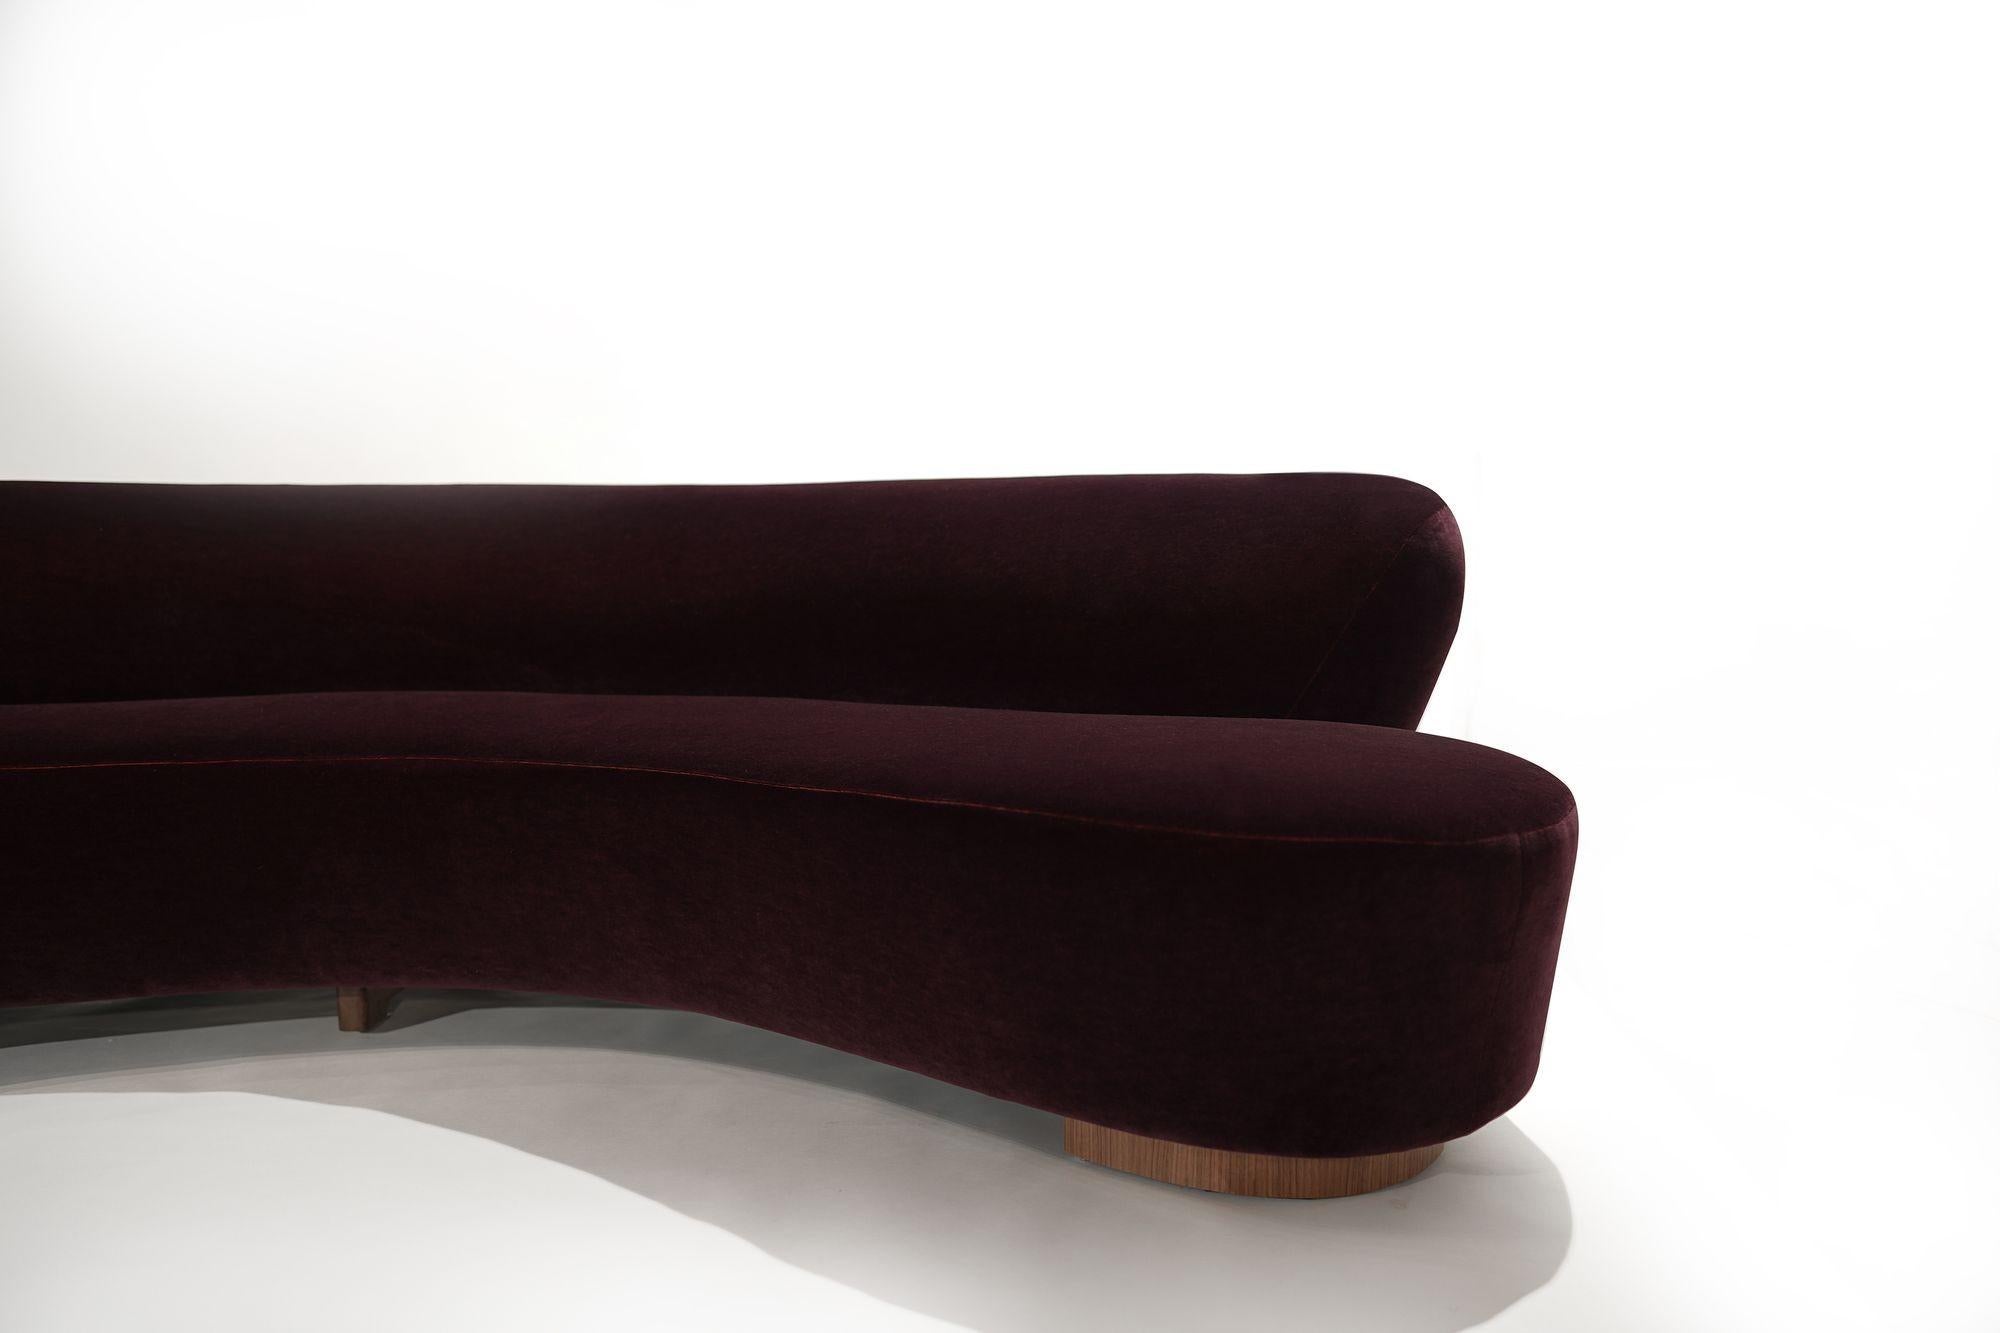 Serpentine Sofa by Vladimir Kagan in Burgundy Mohair, Model 150BS 2